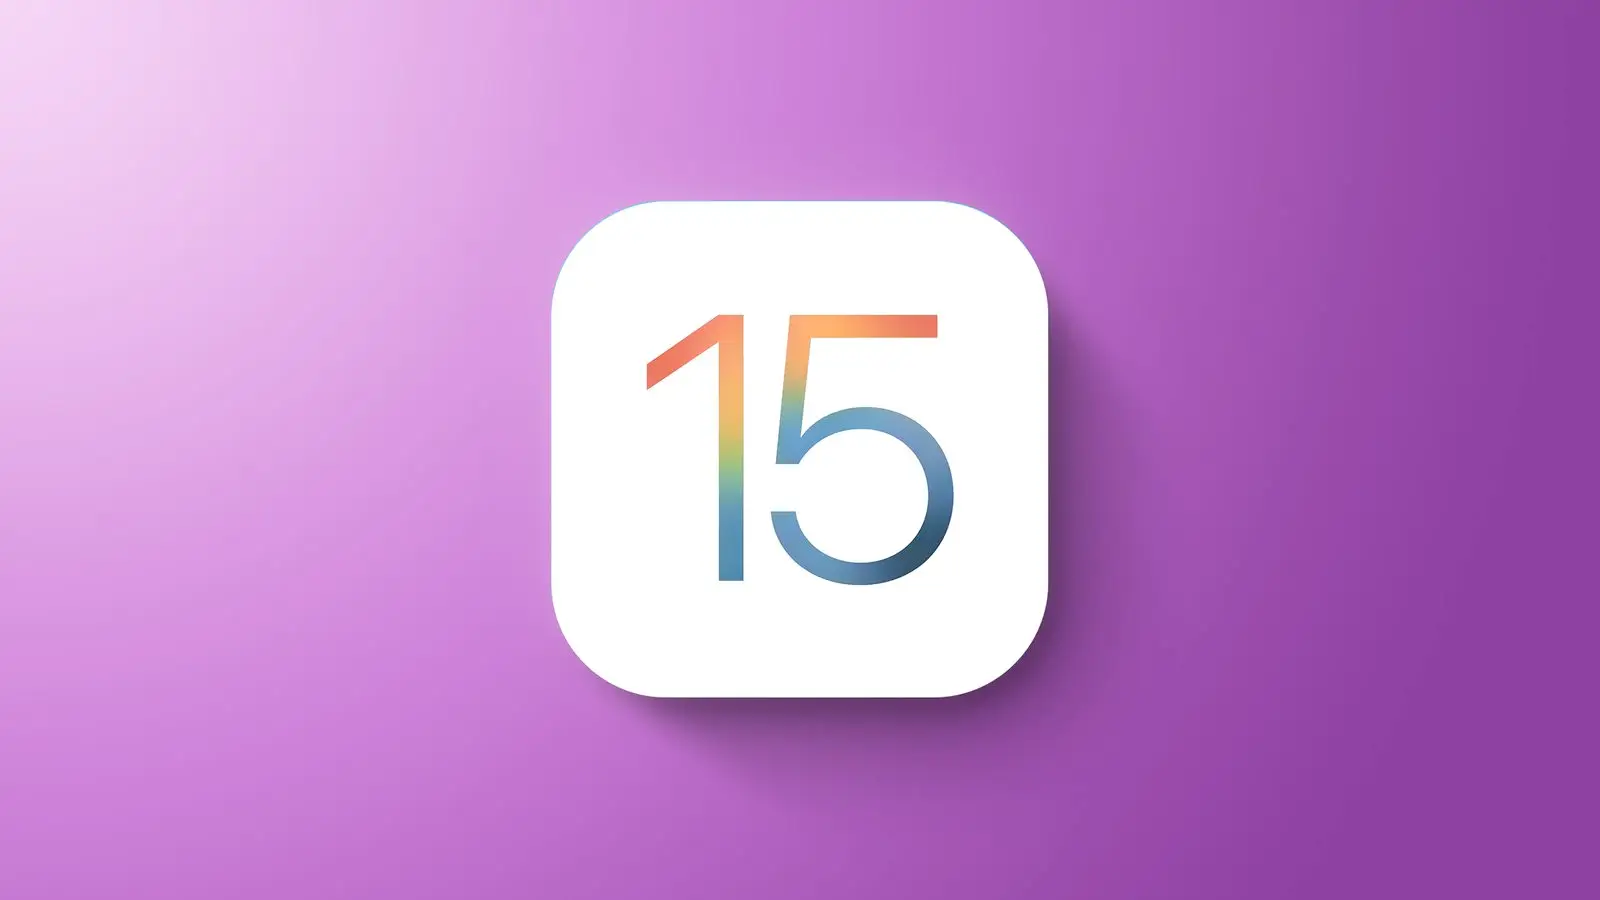 iOS 15.6.1 publié doit être installé immédiatement iPhone iPad